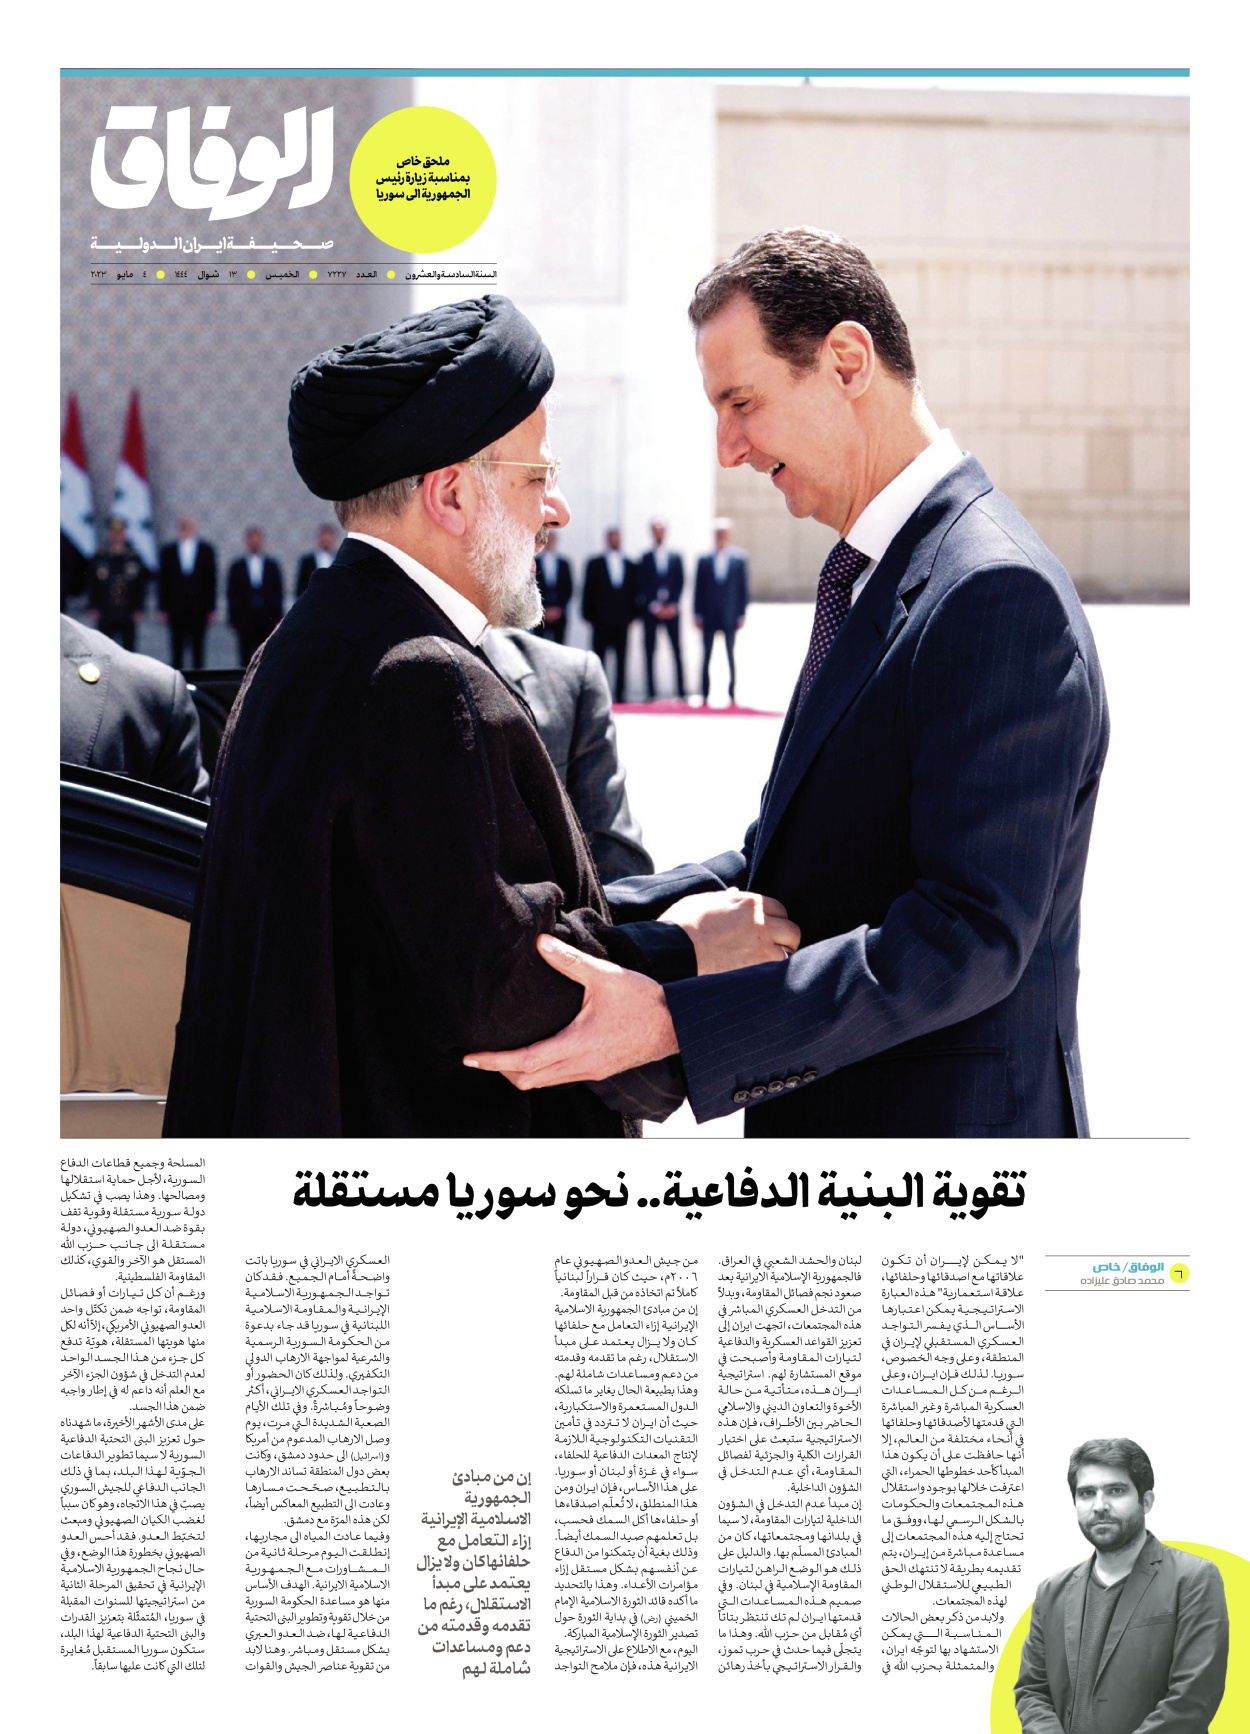 صحیفة ایران الدولیة الوفاق - ملحق بمناسبة زيارة رئيس الجمهورية الى سوريا - ٠٤ مايو ٢٠٢٣